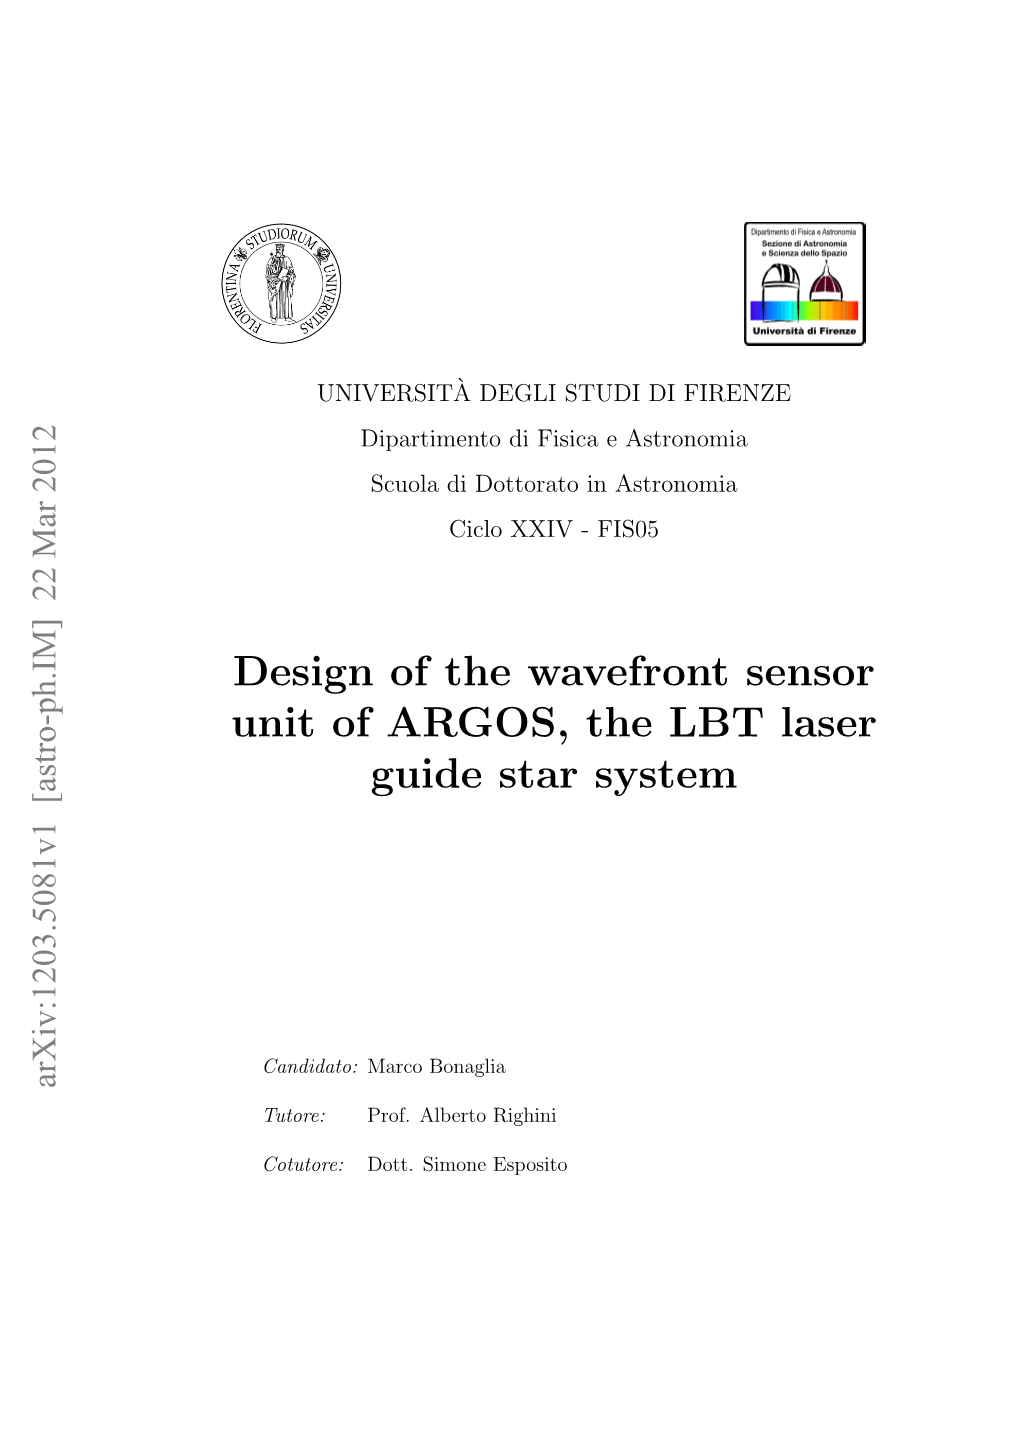 Design of the Wavefront Sensor Unit of ARGOS, the LBT Laser Guide Star System